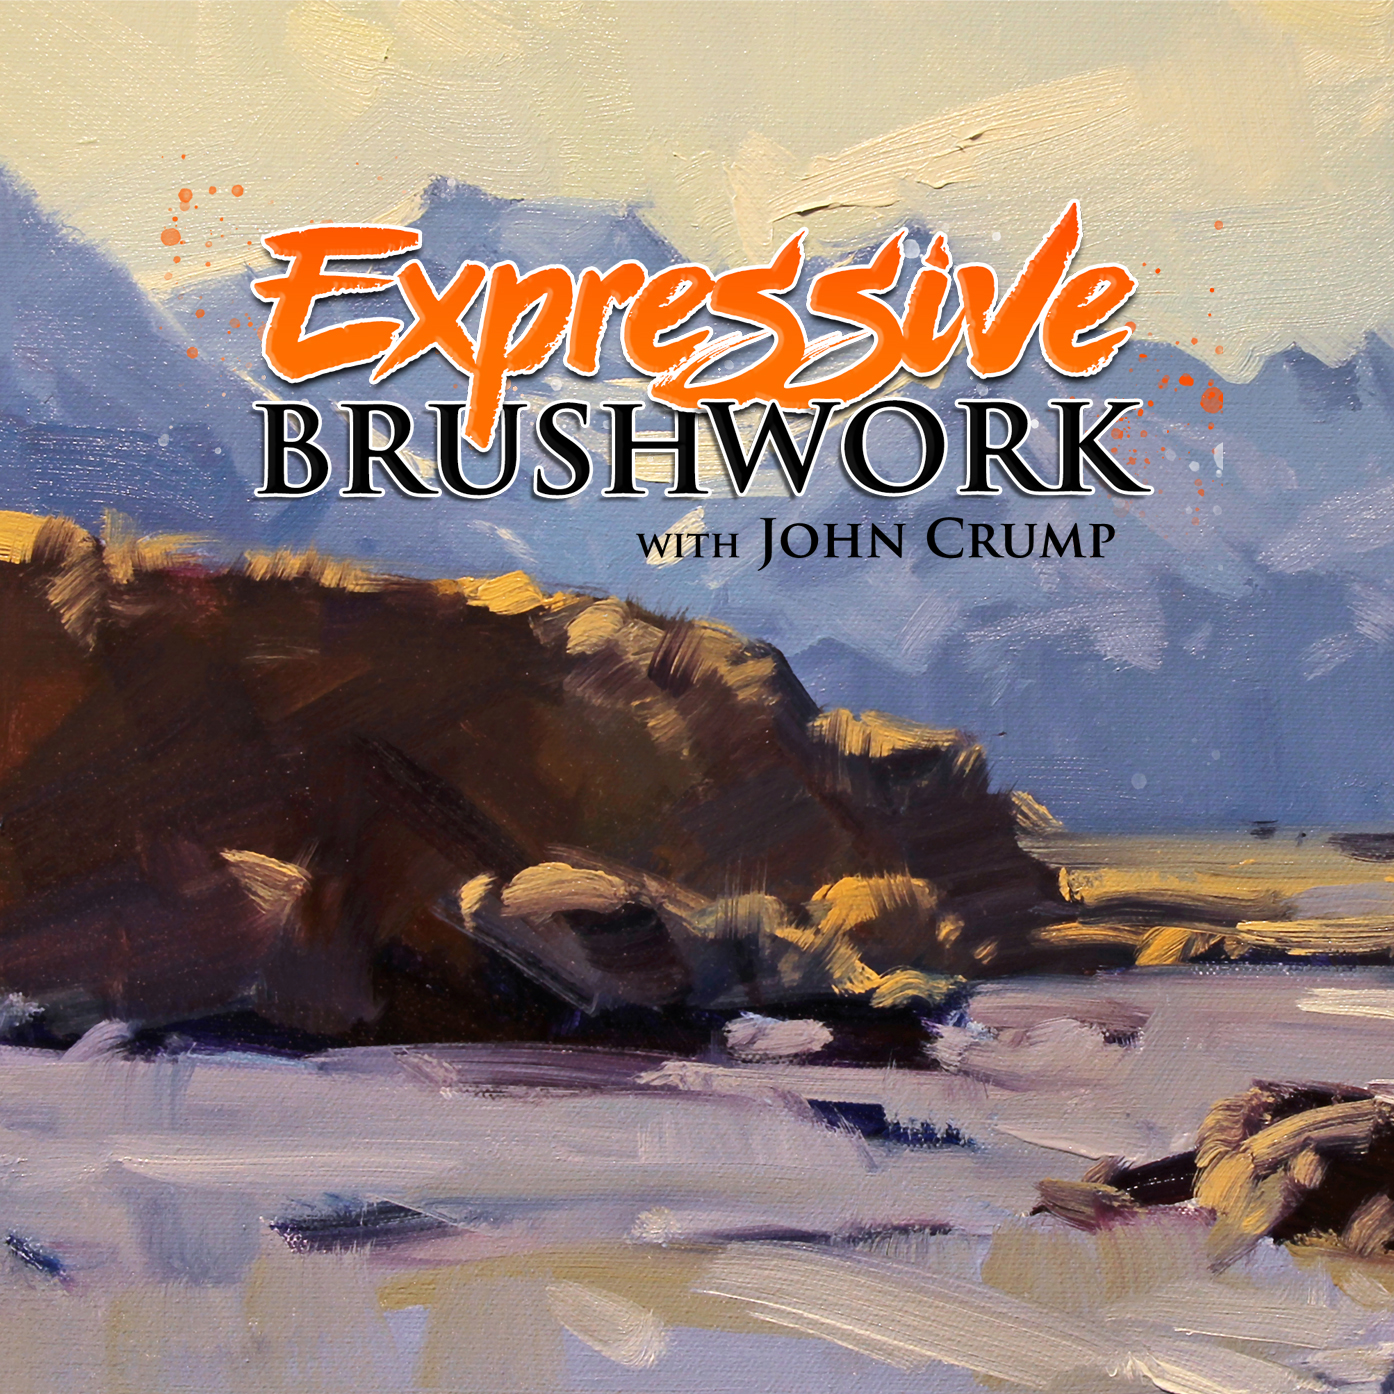 Expressive Brushwork Student Critiques